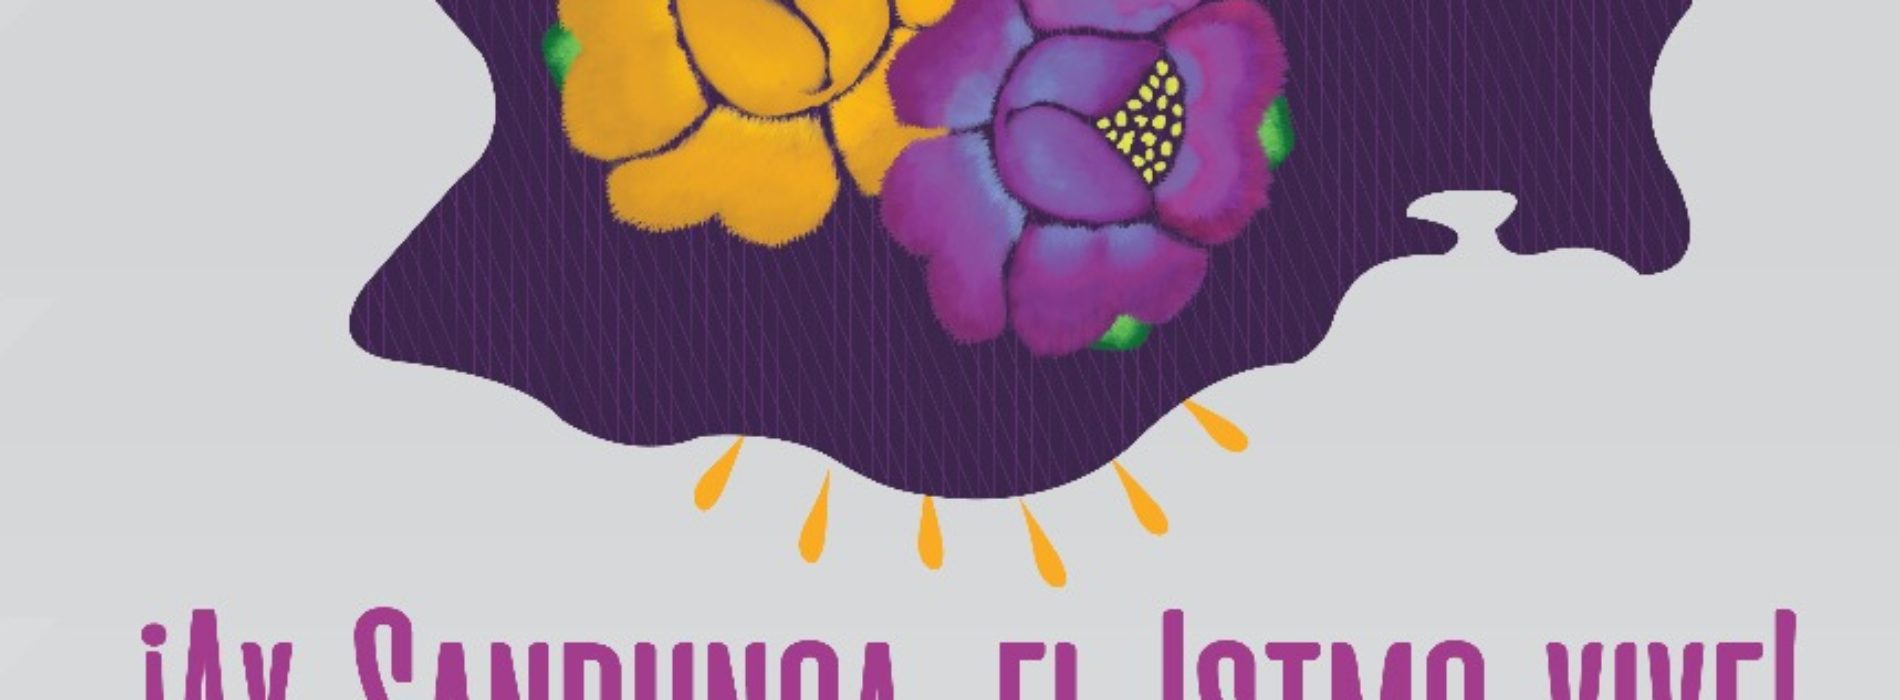 Realizarán Expo-Venta ¡Ay Sandunga, el Istmo Vive! en la Ciudad de México